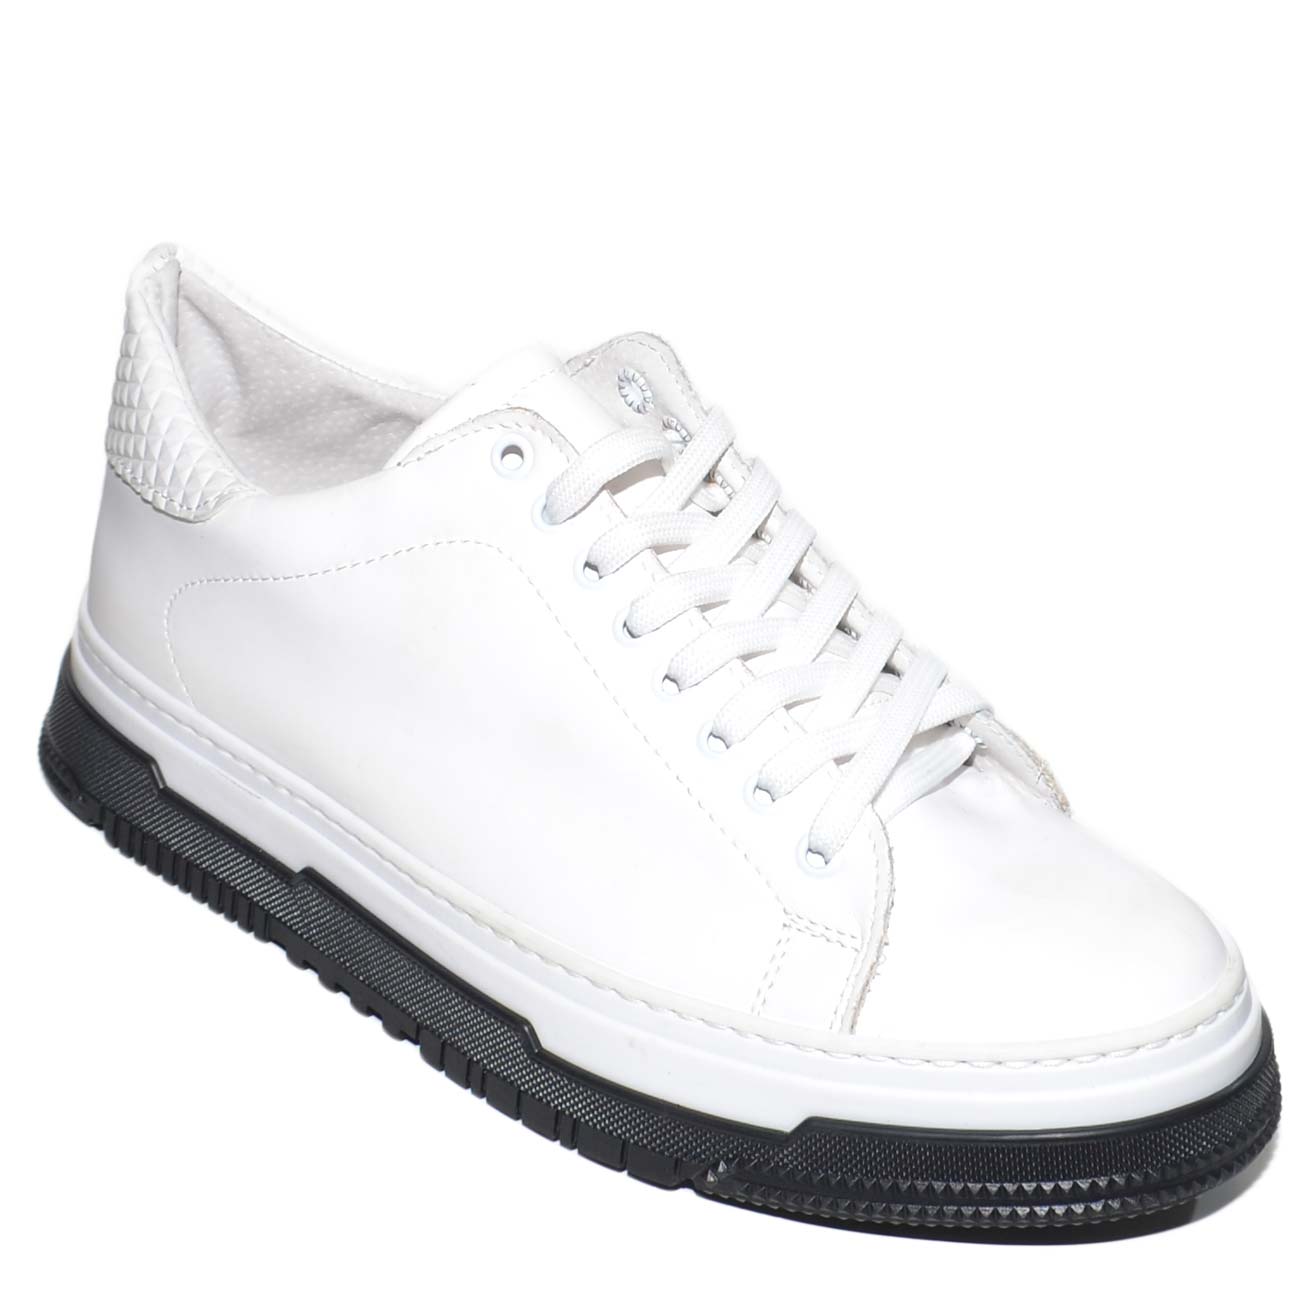 Sneakers uomo bassa bianca vera pelle gommata con fortino piramidal fondo cassettoni bicolore comfort moda made in italy.